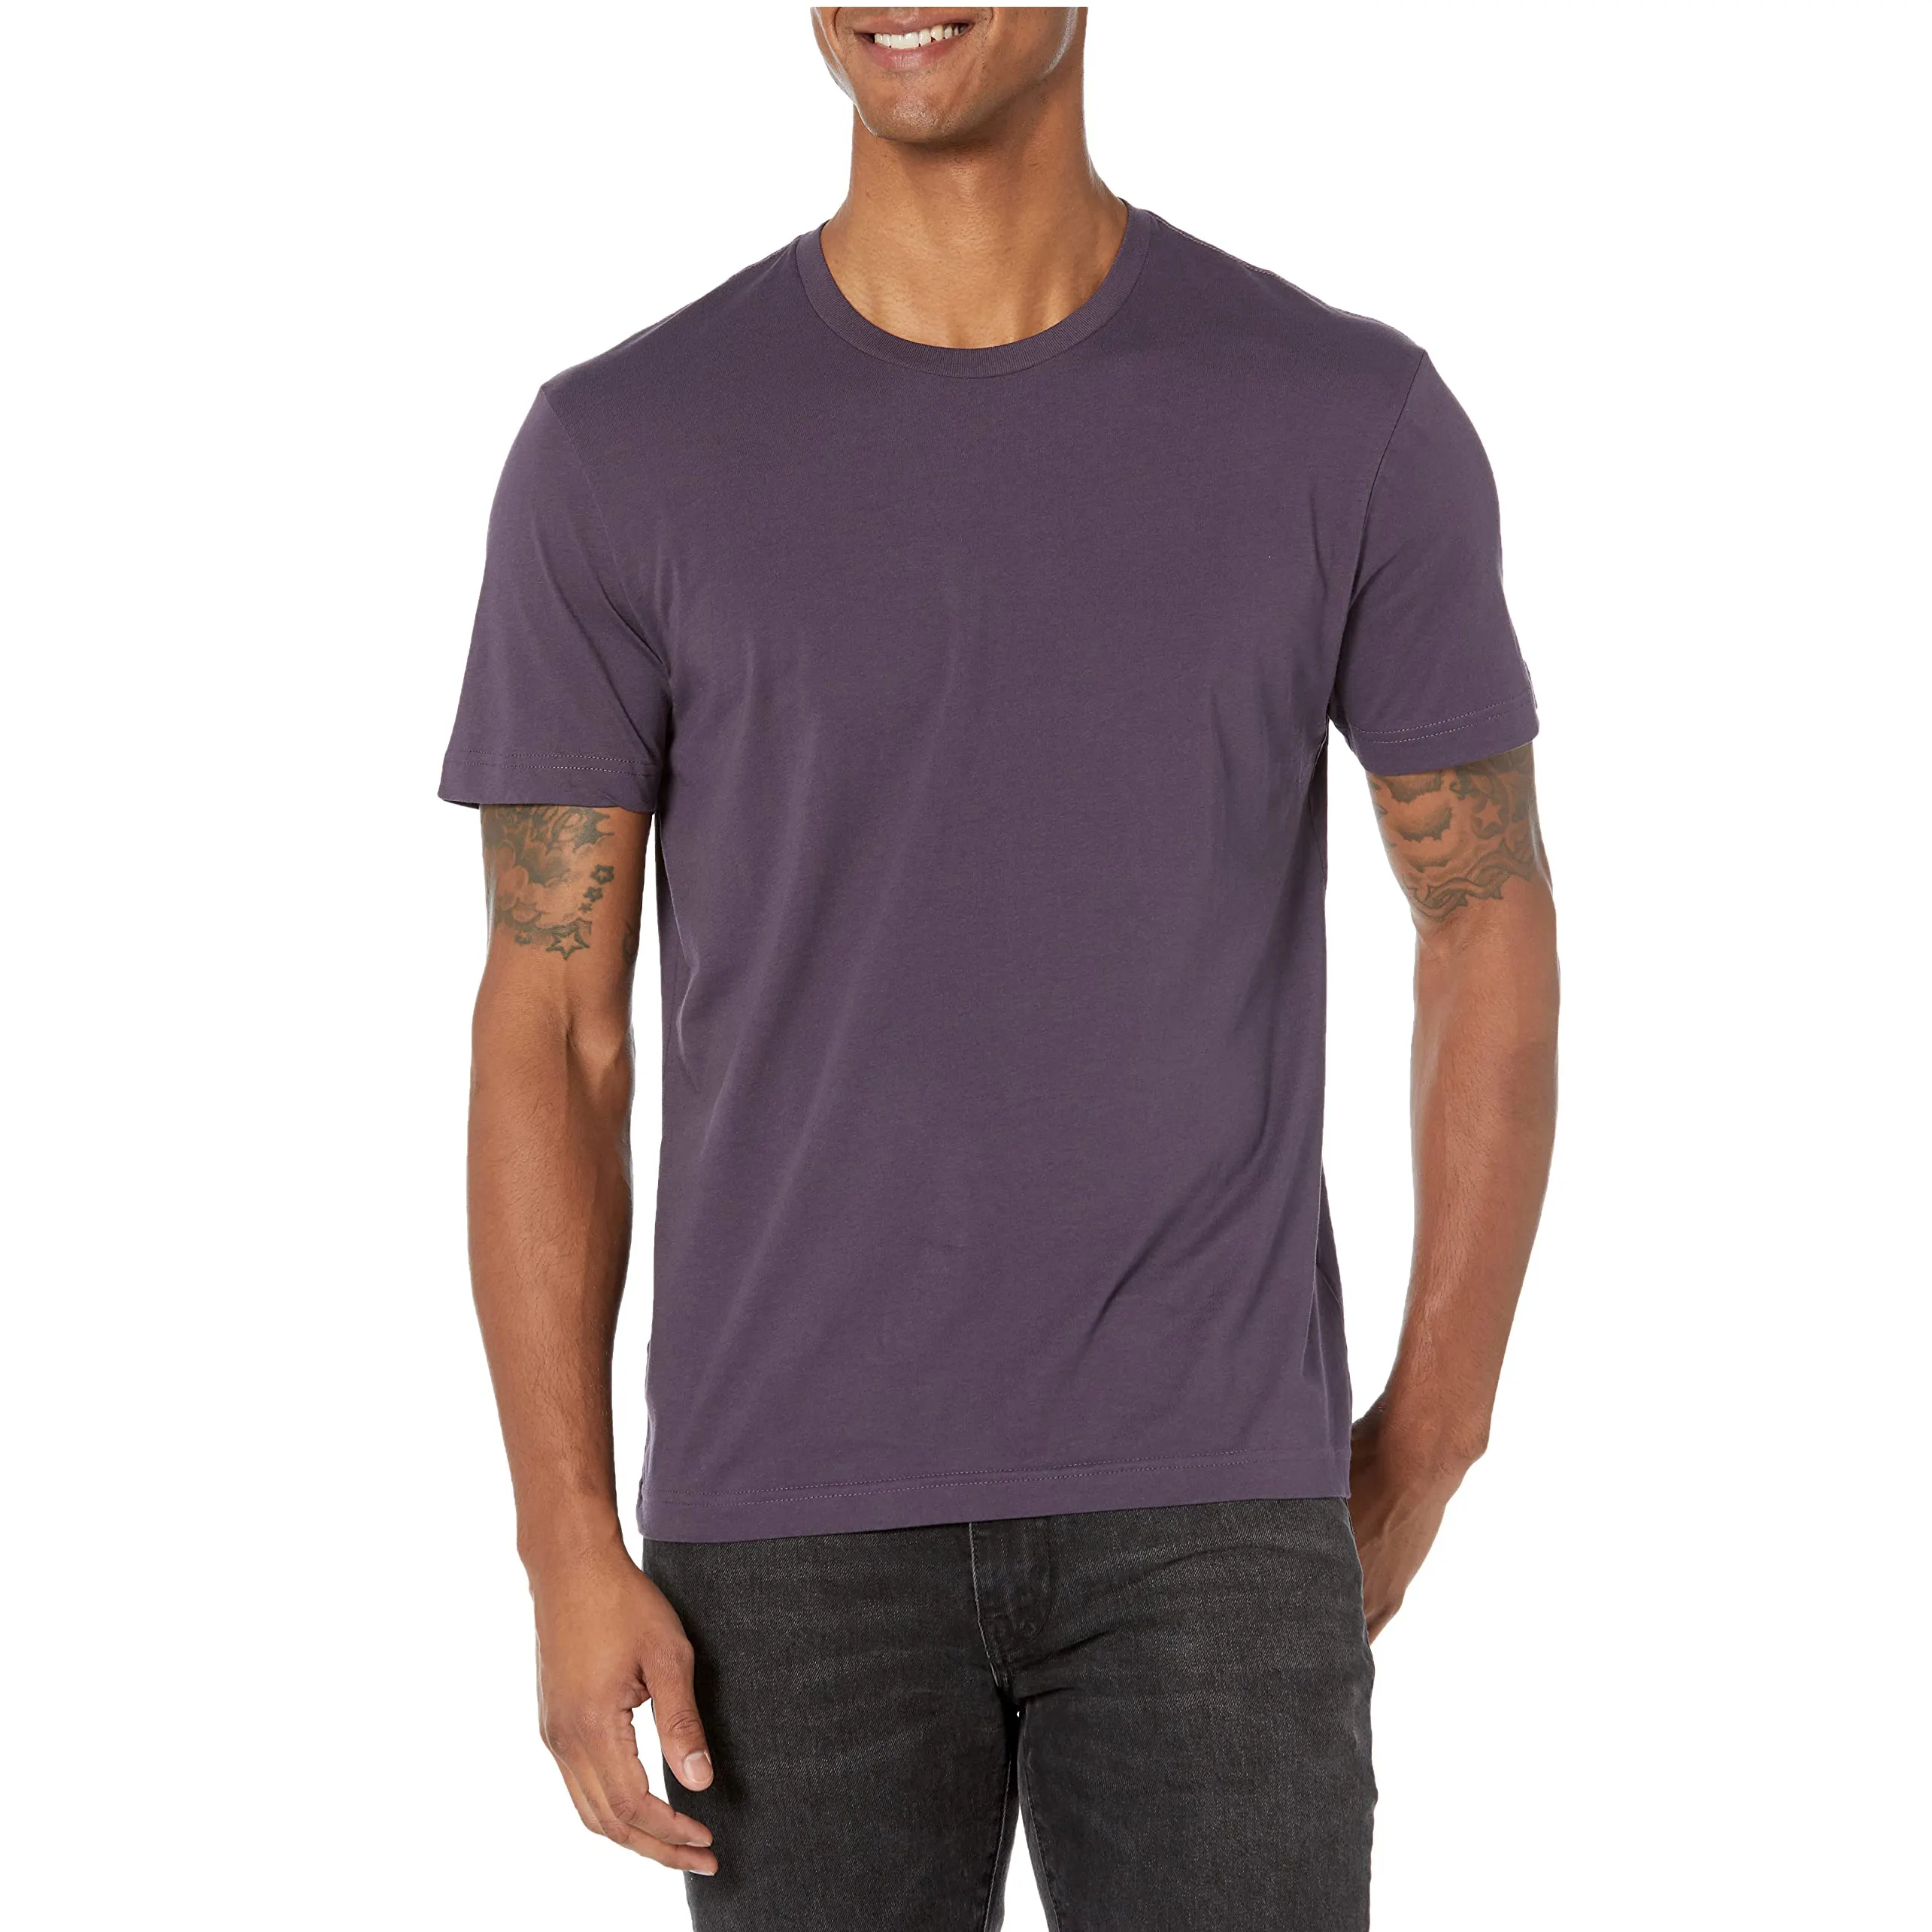 고품질 사용자 정의 색상 대형 그래픽 디자인 남성 티셔츠 100% 폴리에스터 무료 샘플 메리노 면 혼방 티셔츠 남성용